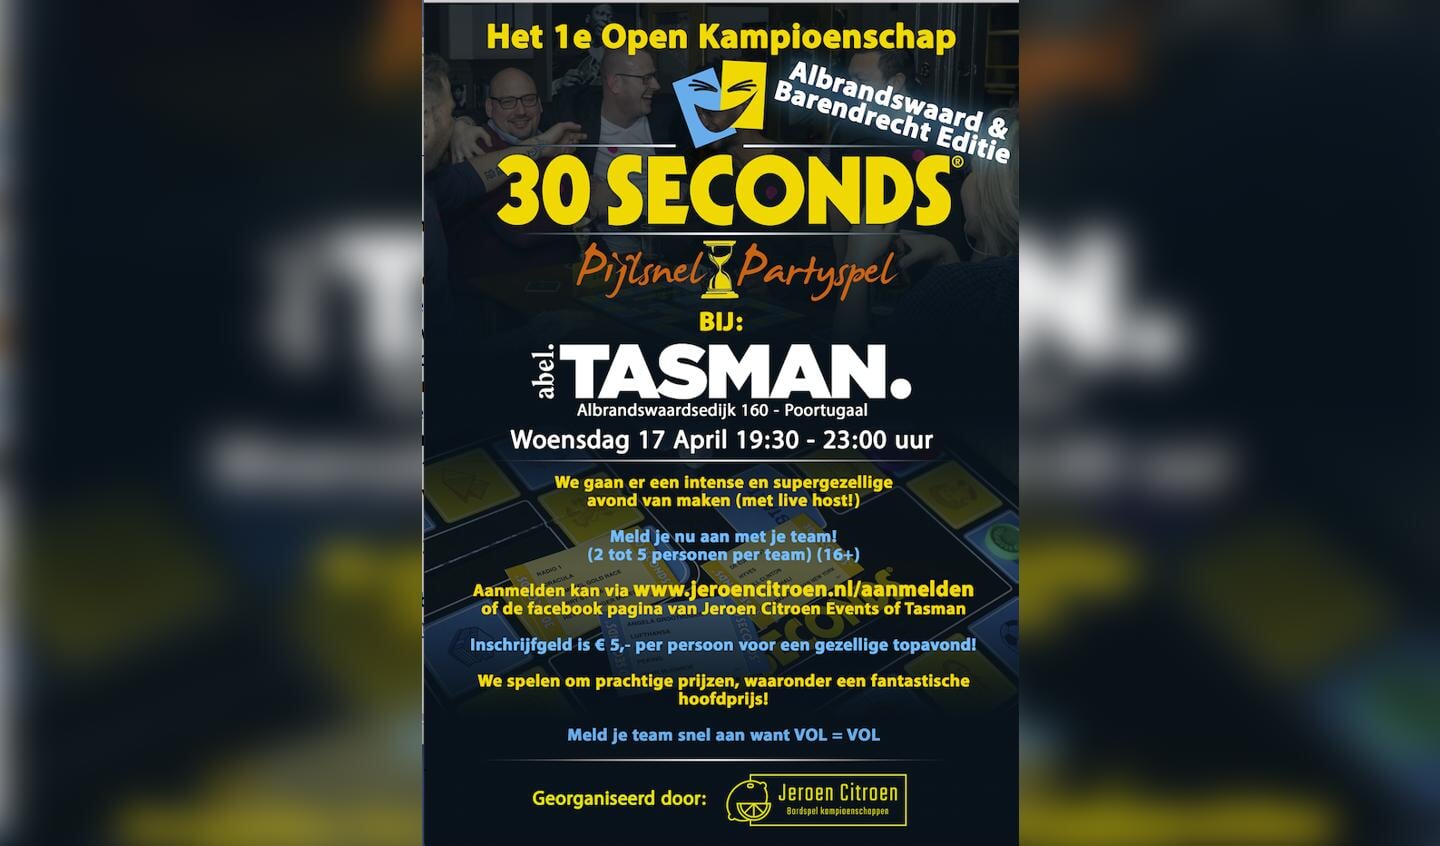 30 seconds Open Kampioenschap - het nieuws uit Barendrecht